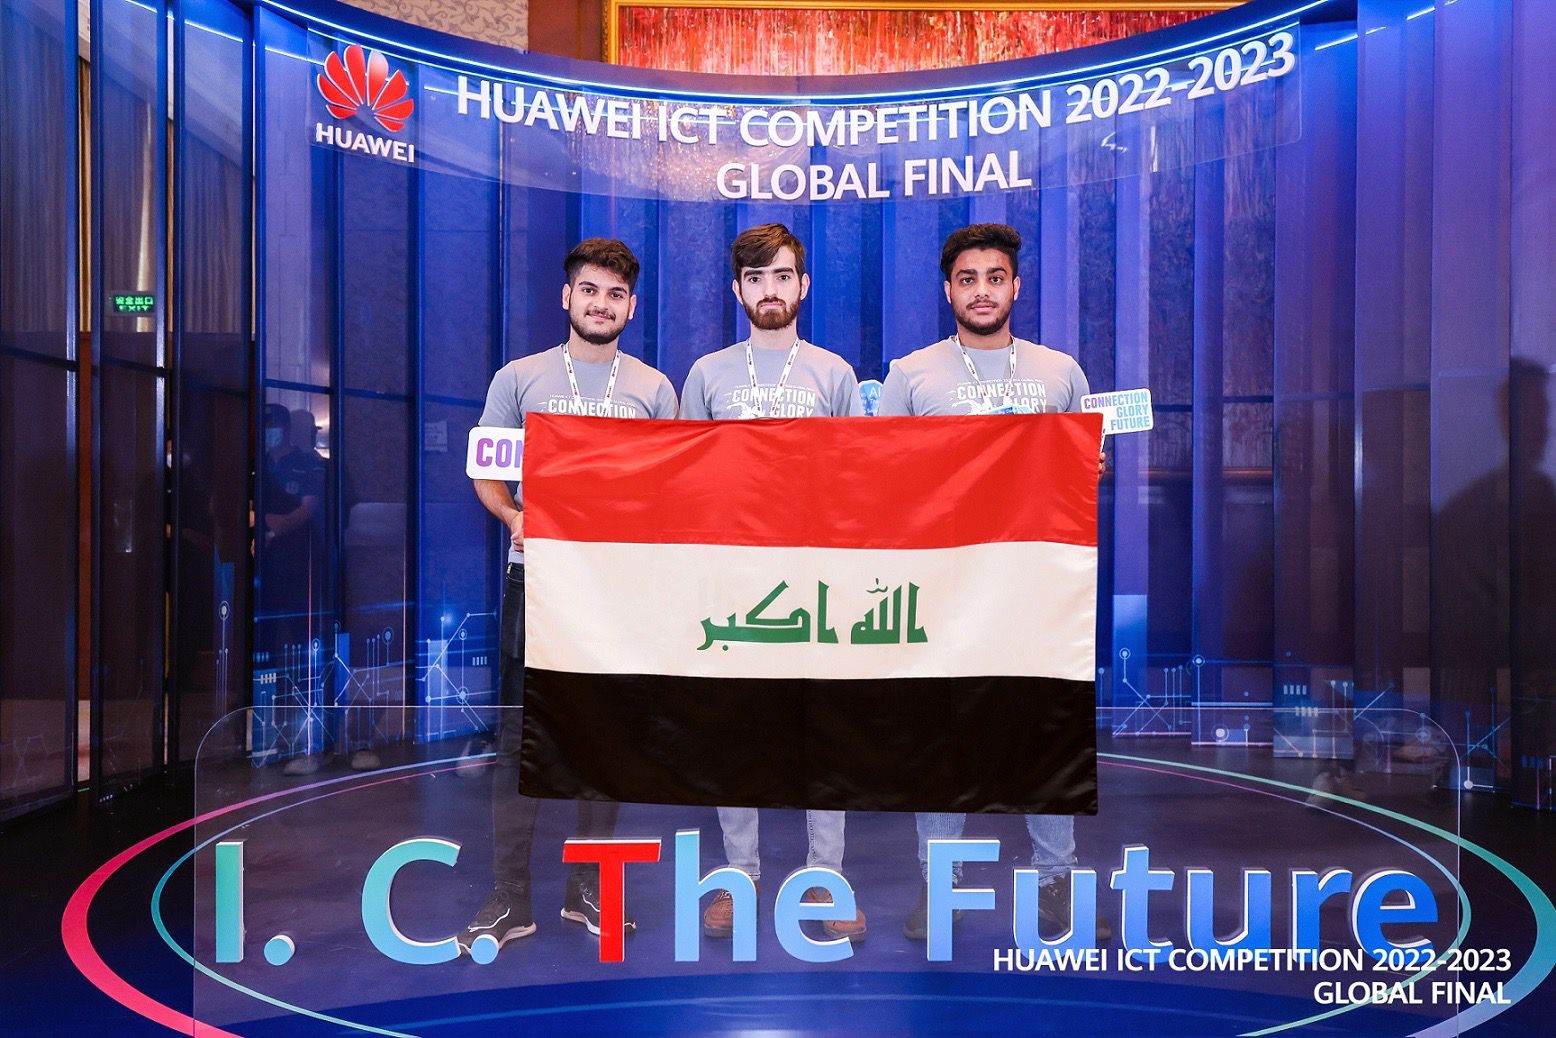 طلاب من العراق يحصدون المراكز الأولى في مسابقة هواوي العالمية في الصين (صور)